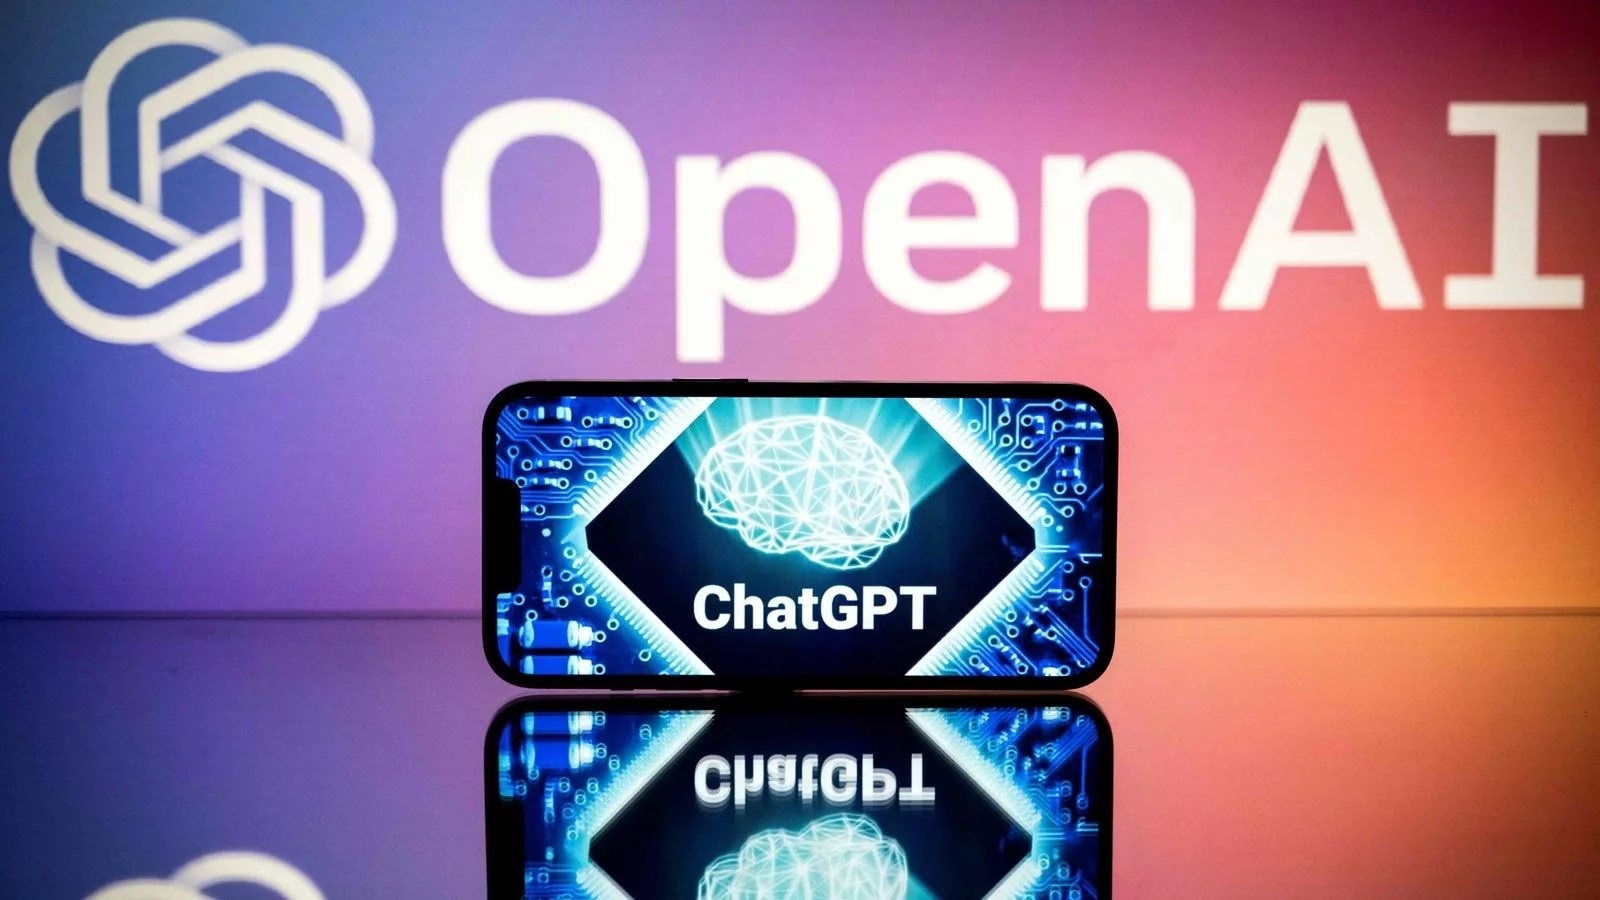 OpenAI, ChatGPT, GPT, AI